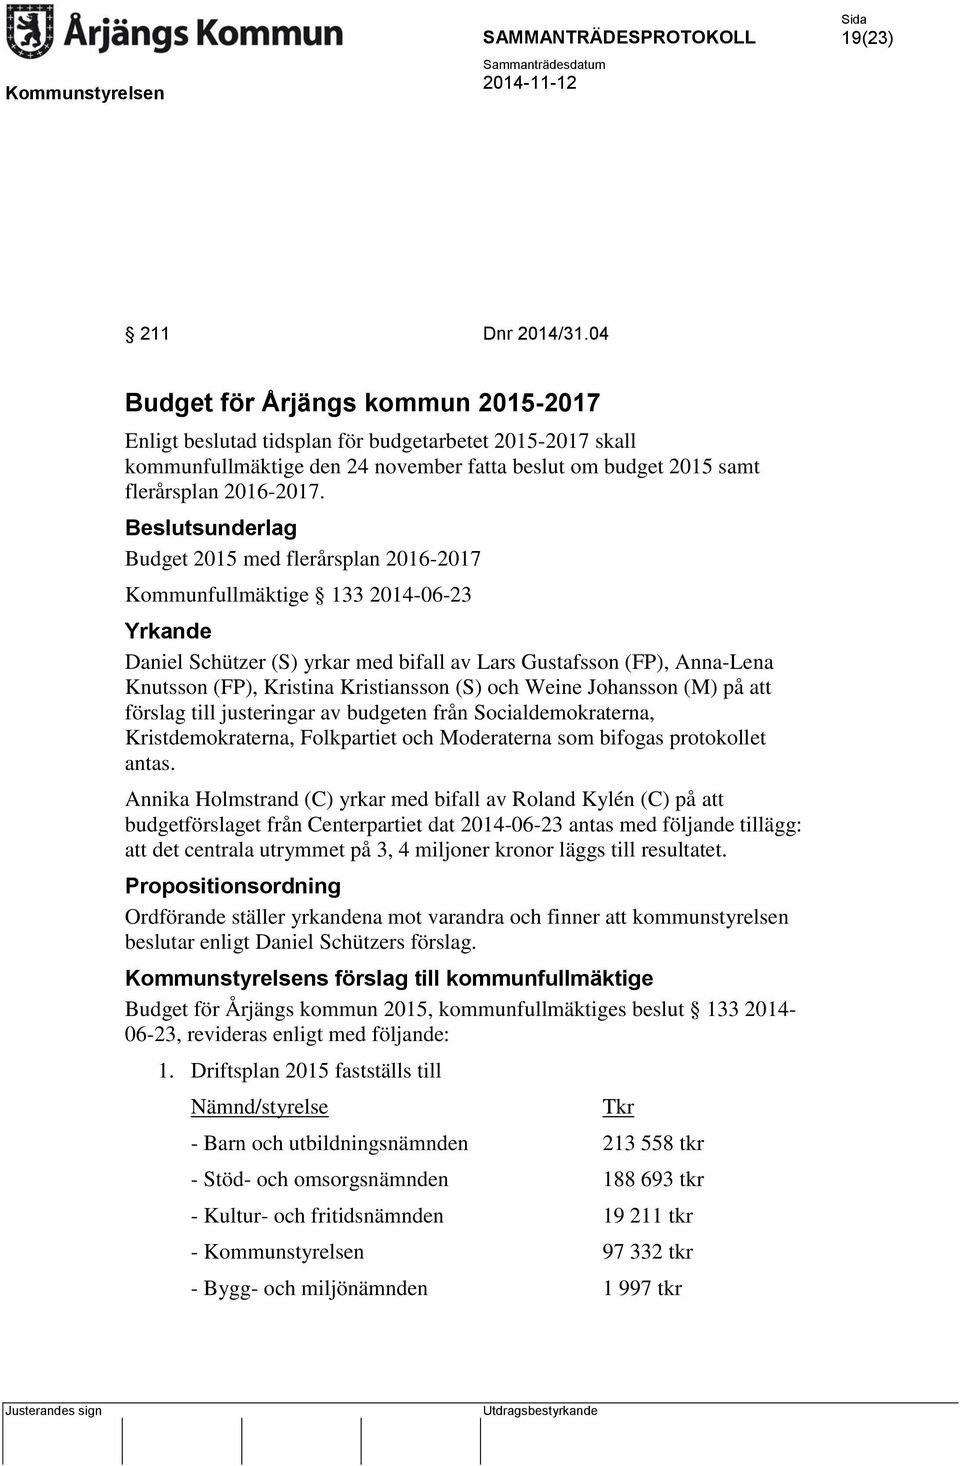 Beslutsunderlag Budget 2015 med flerårsplan 2016-2017 Kommunfullmäktige 133 2014-06-23 Yrkande Daniel Schützer (S) yrkar med bifall av Lars Gustafsson (FP), Anna-Lena Knutsson (FP), Kristina